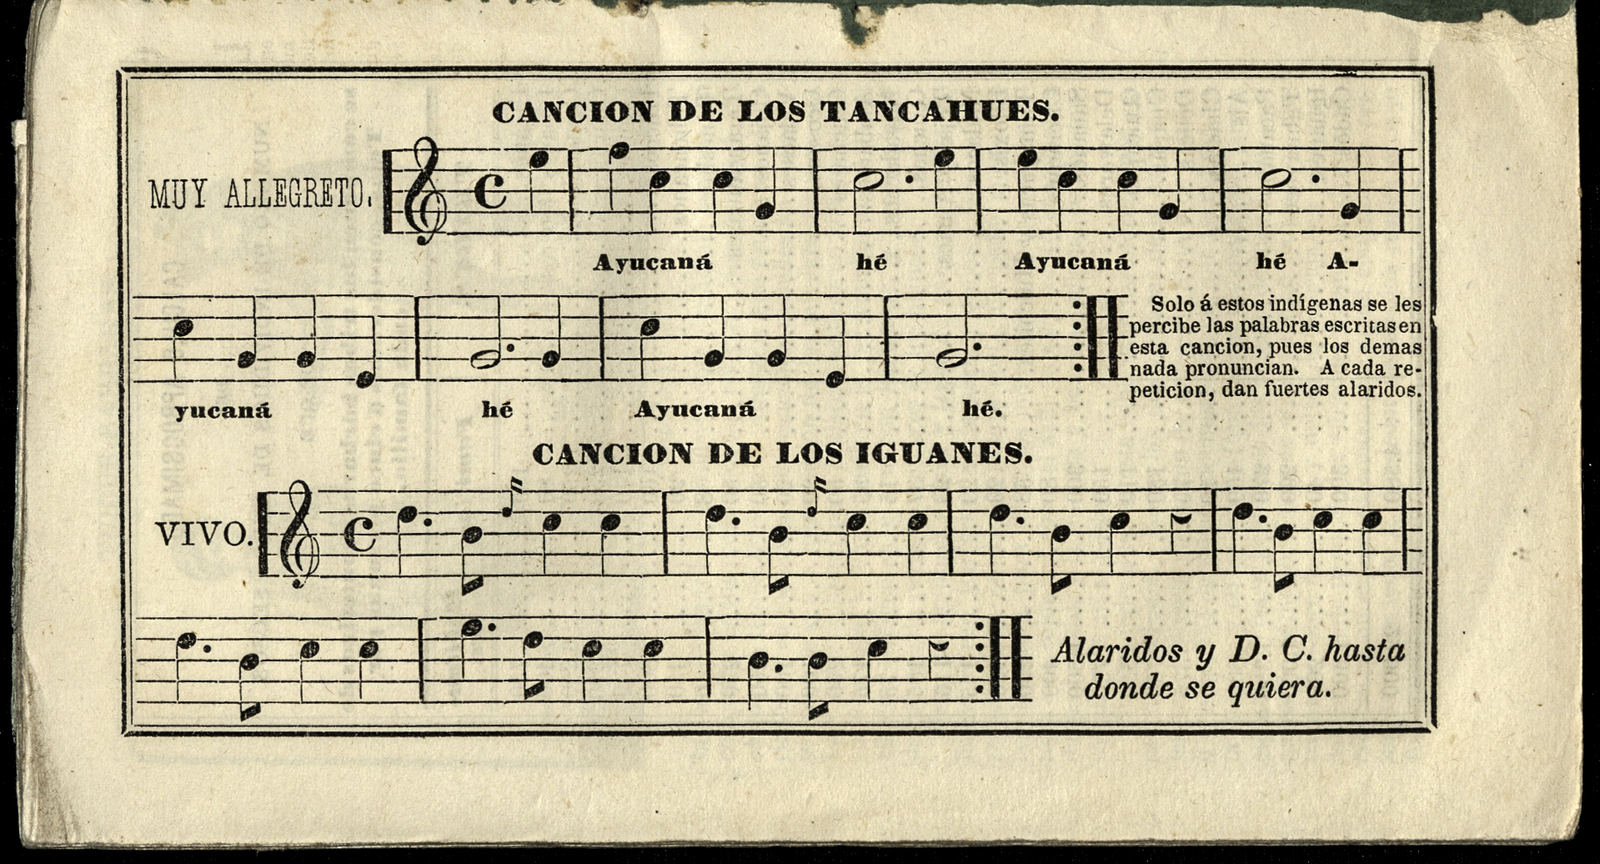 Sesto Calendario portatil, de Ignacio Cumplido, arreglado al meridiano de México para el año de 1841